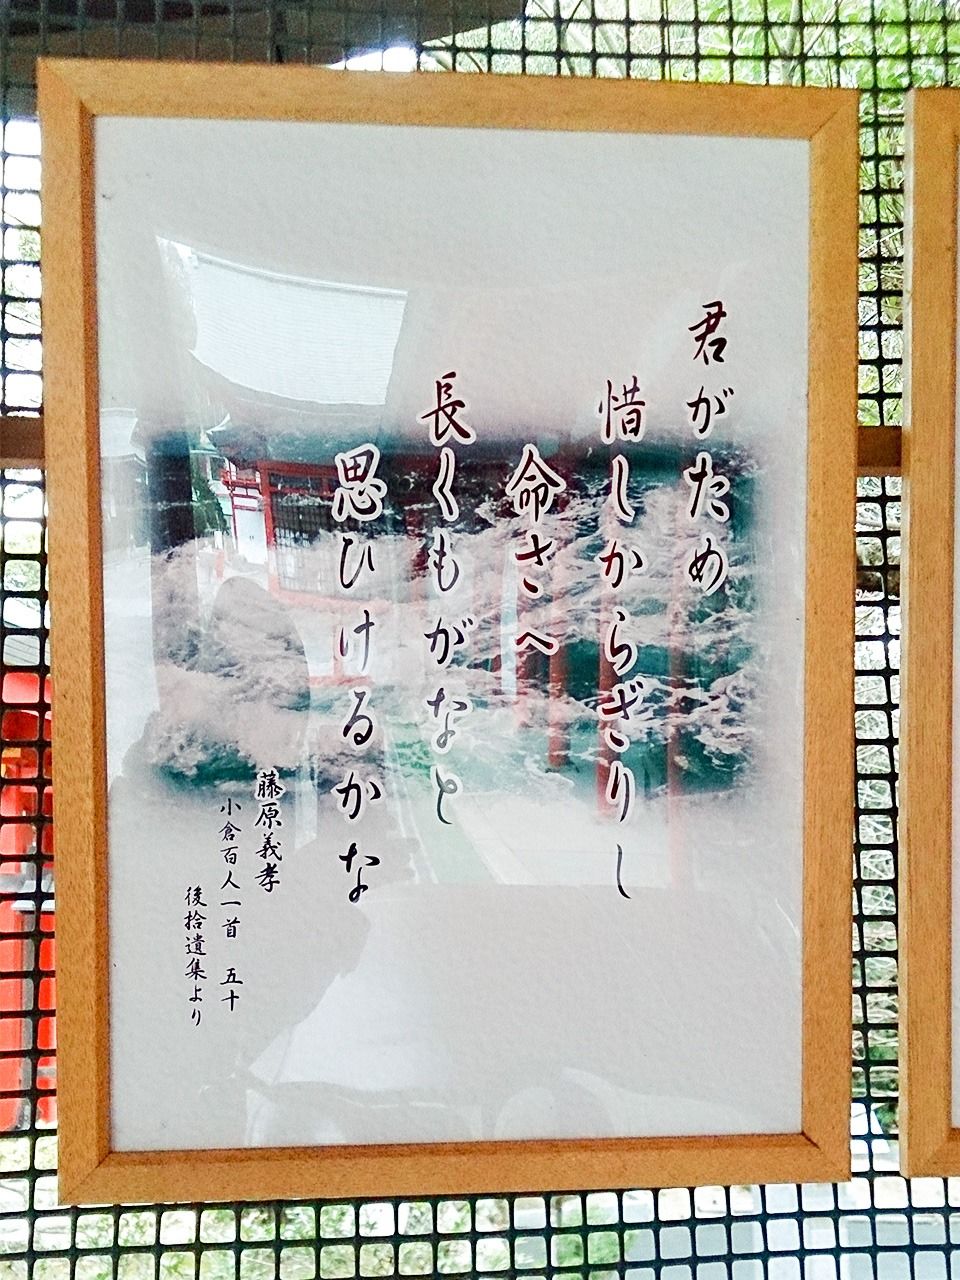 En el recinto del santuario Ōmi se exhiben los poemas del Hyakunin isshu. El de la imagen es el del Fujiwara no Yoshitaka.